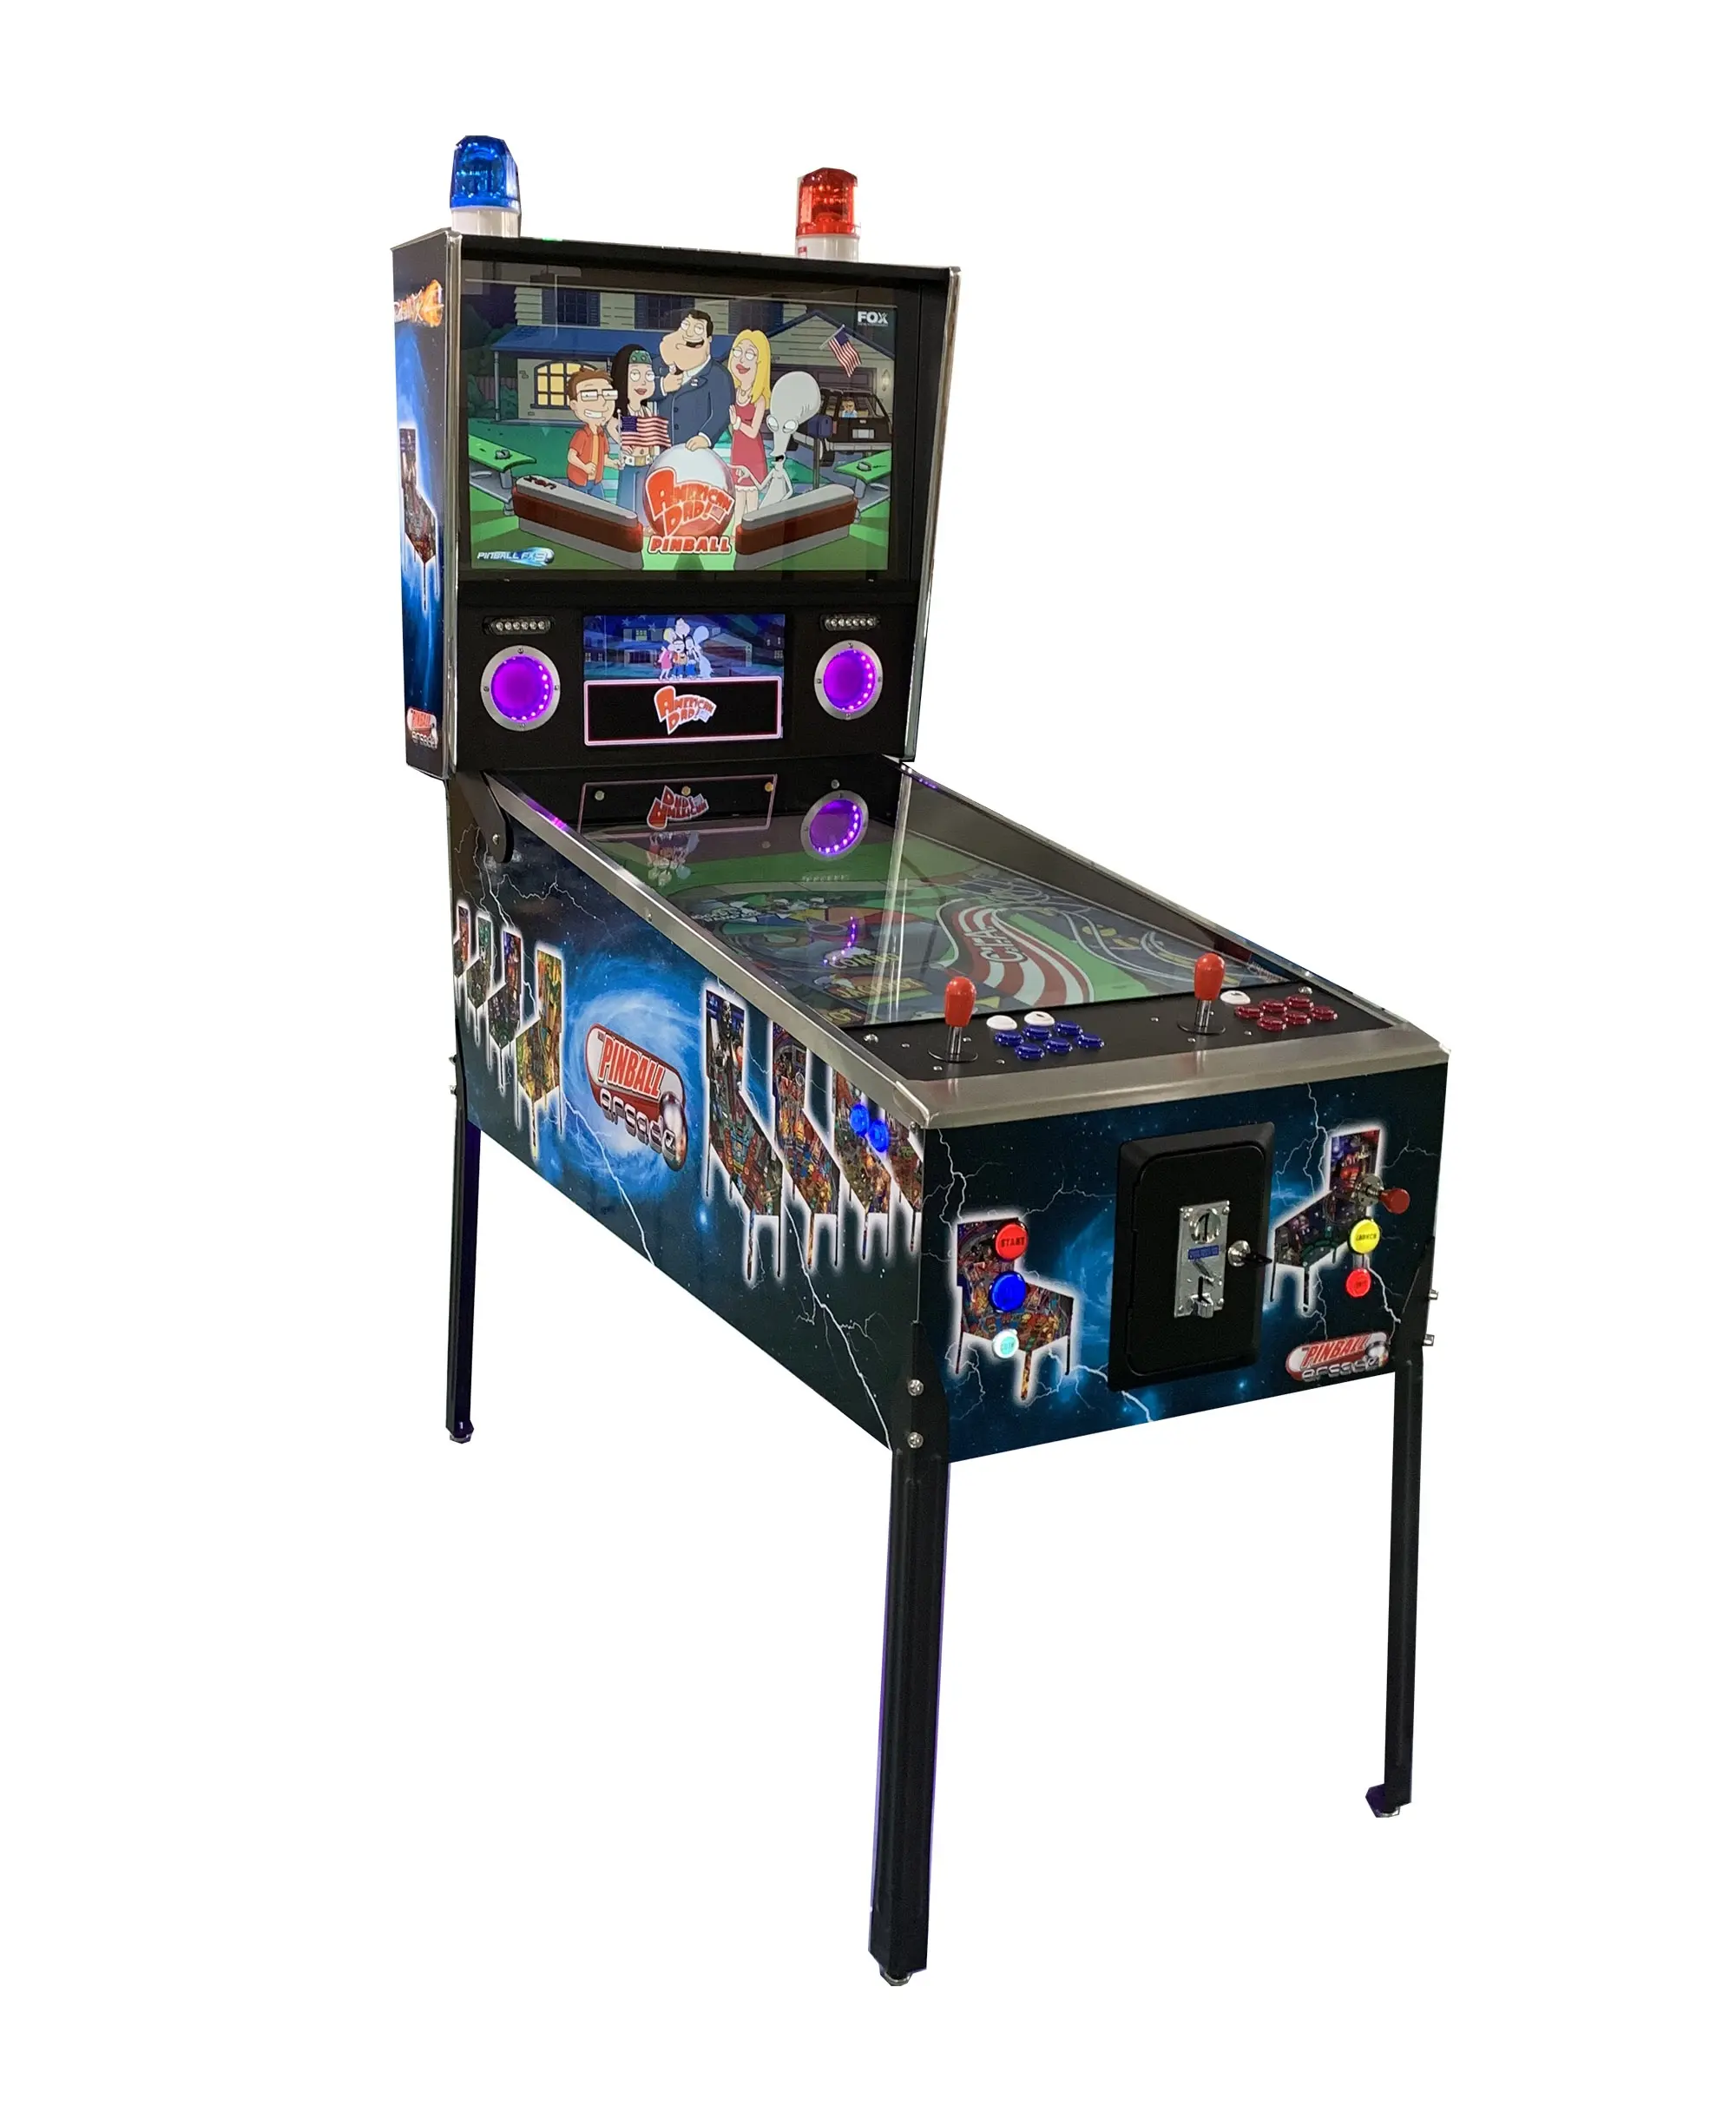 Ultimo nuovo Pinup Popper system macchina da gioco arcade flipper con schermo da 48 pollici